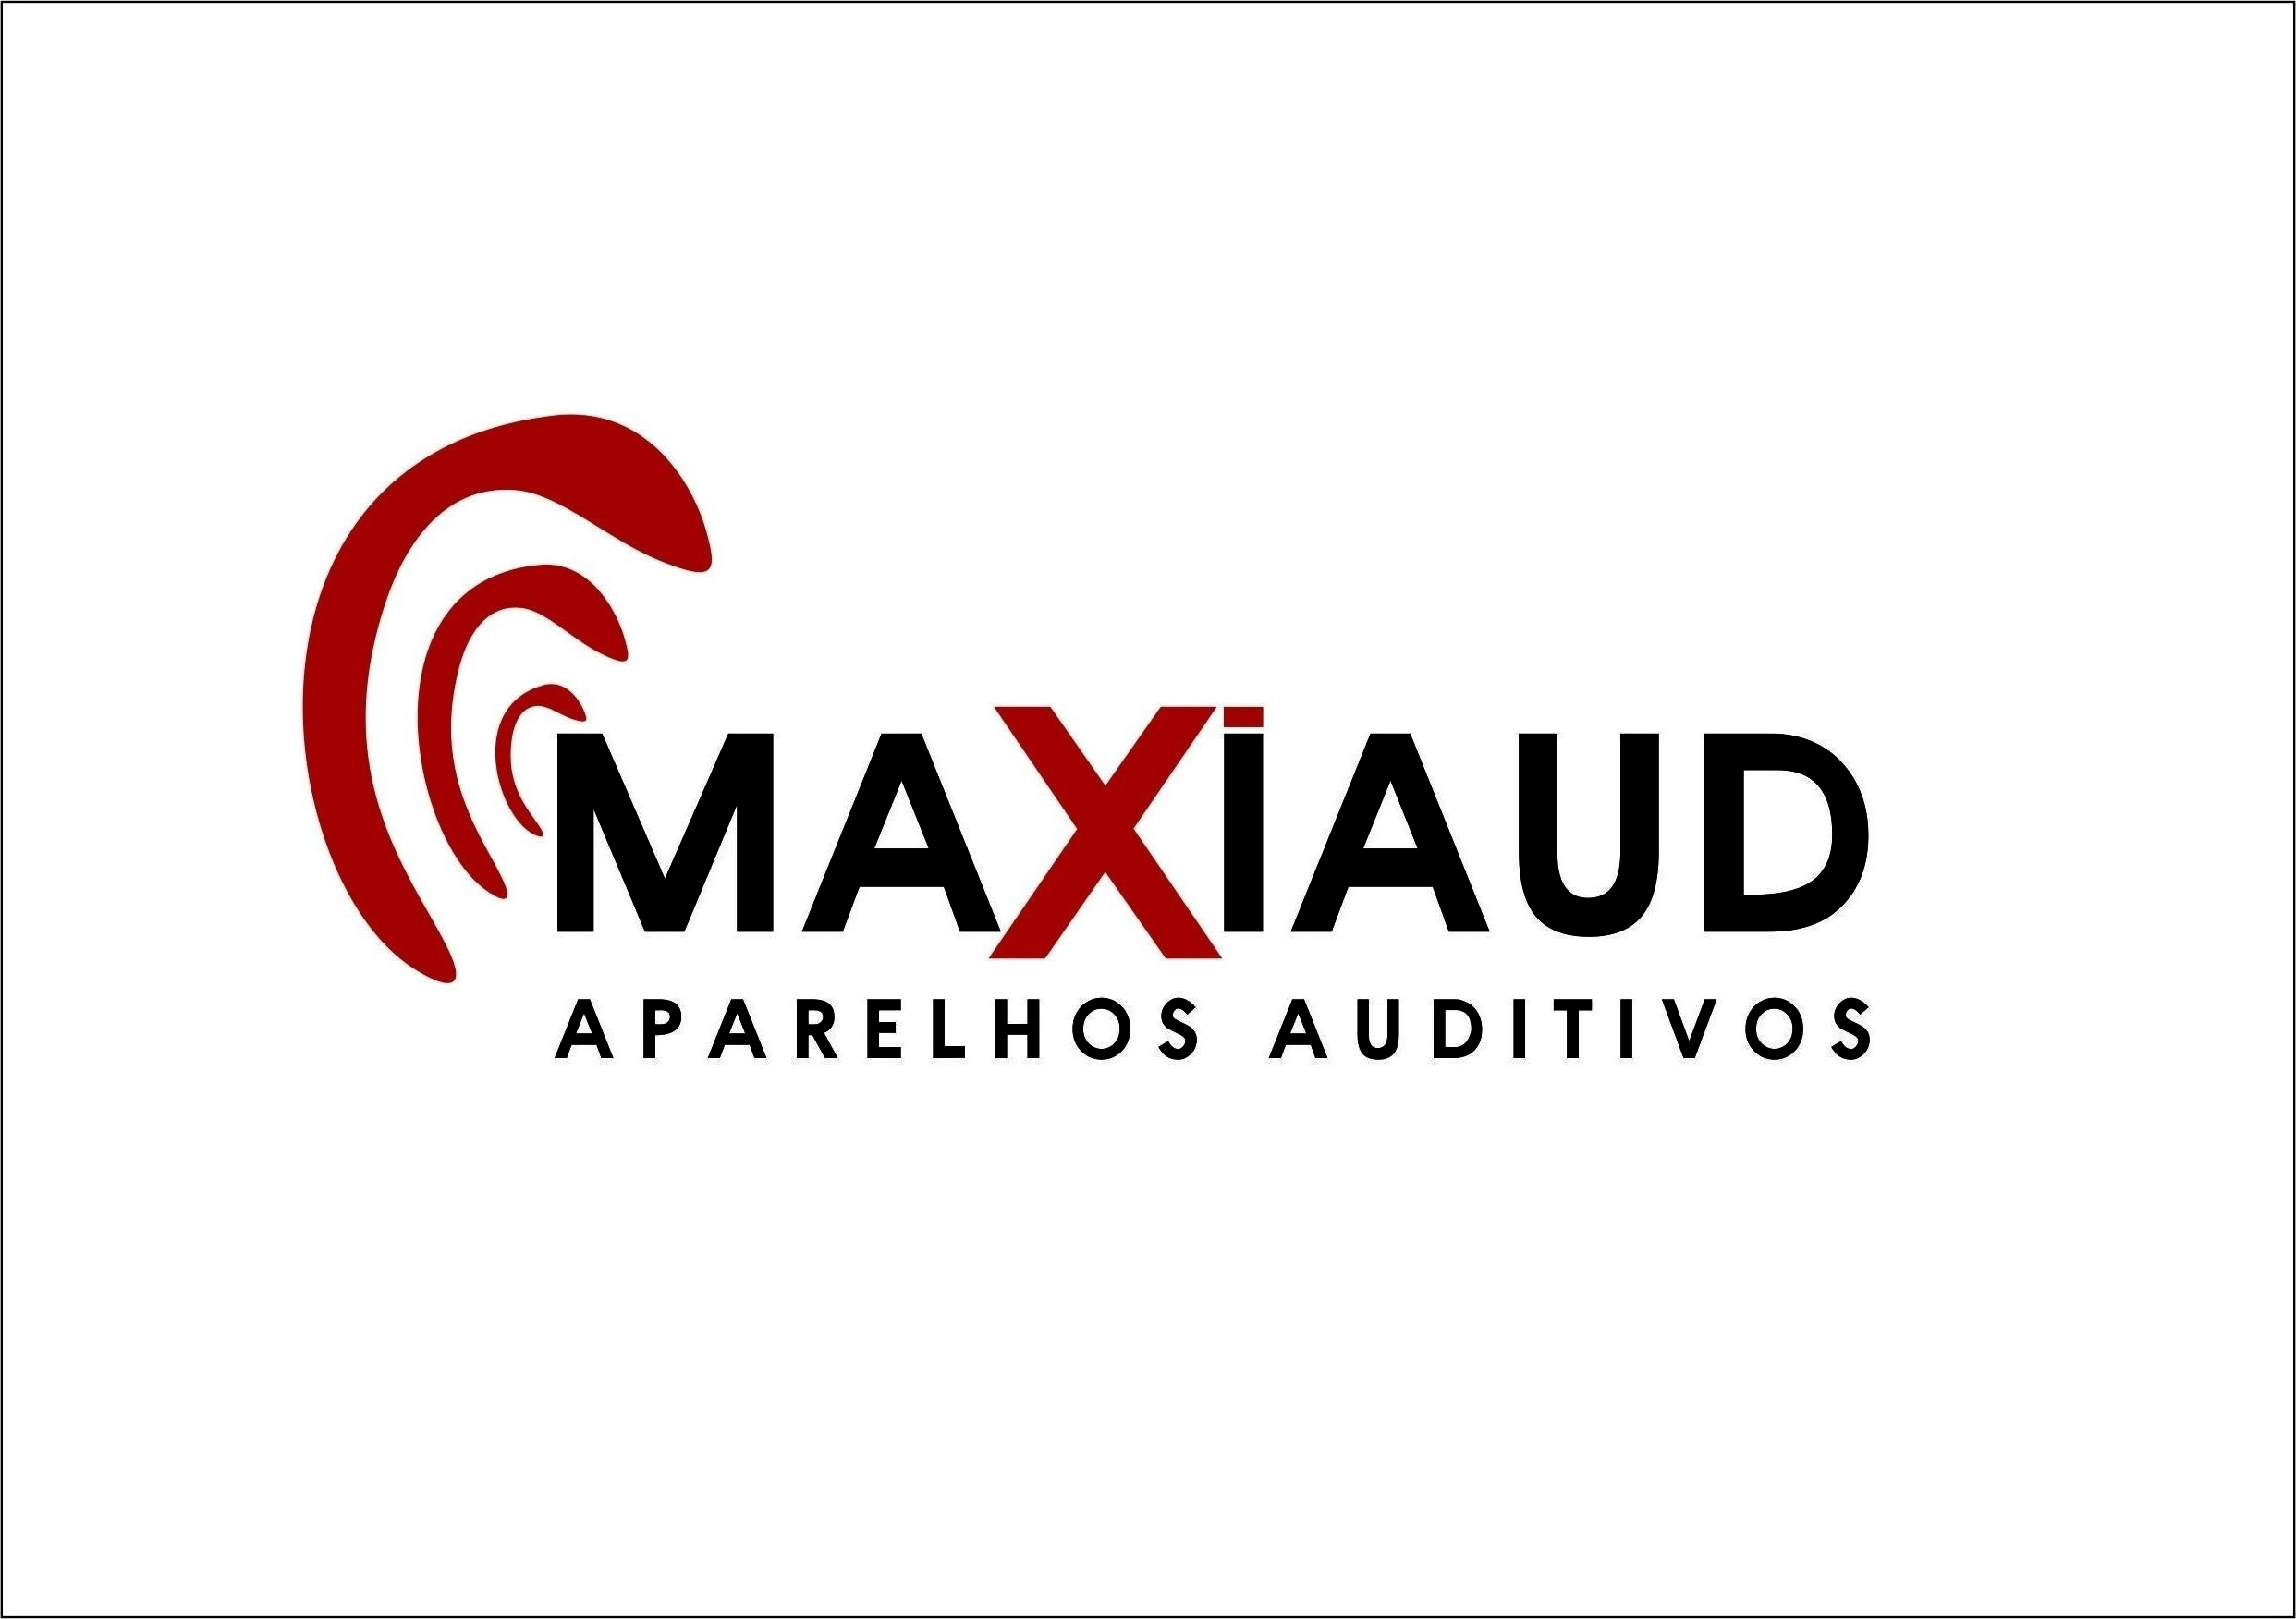 MAXIAUD APARELHOS AUDITIVOS logo